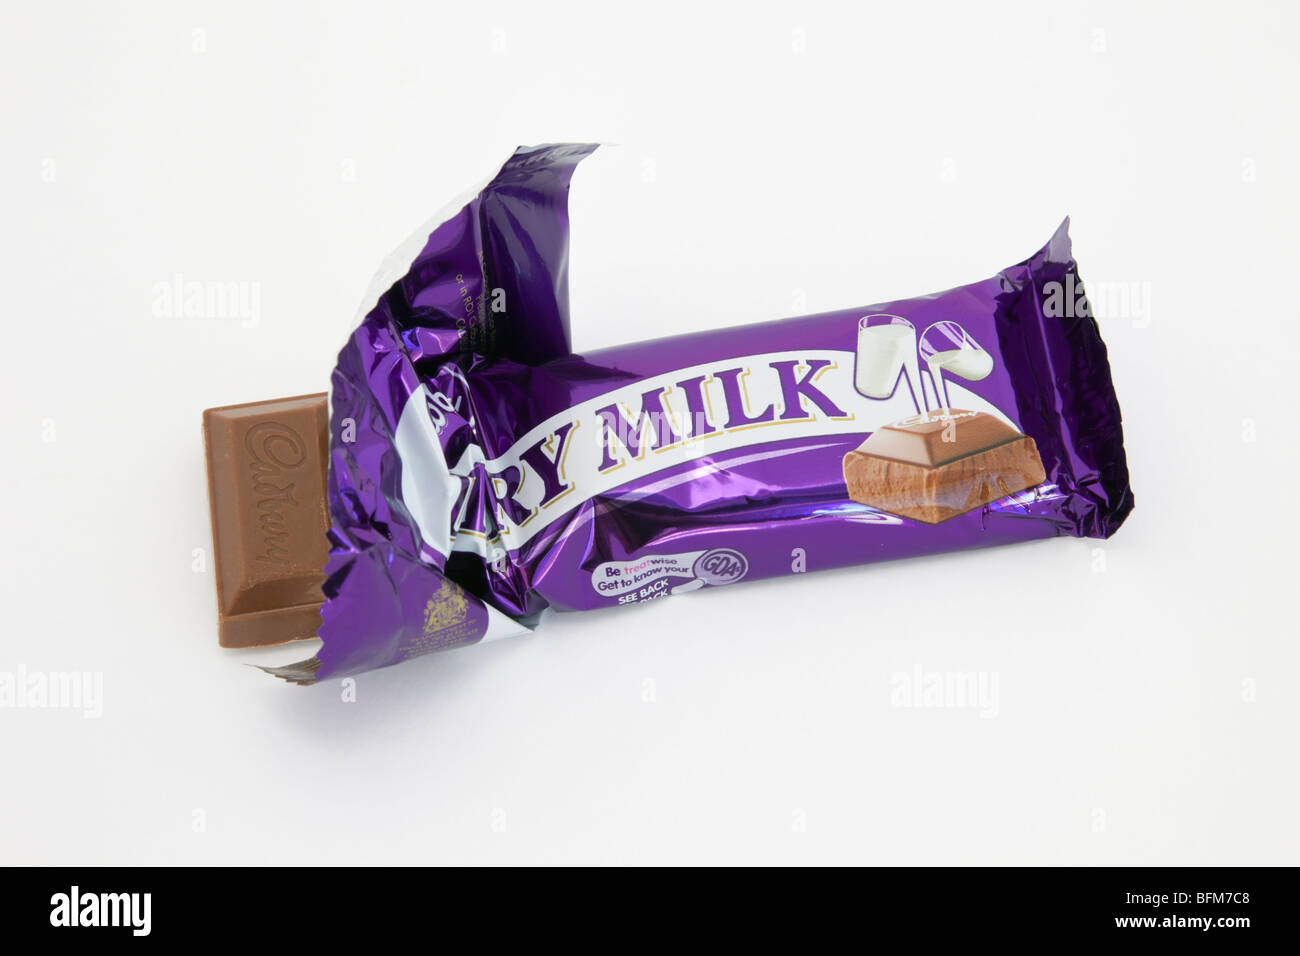 Haut en bas d'un Cadbury's Dairy Milk Chocolate bar en aluminium ouvert isolé sur un fond blanc. En Angleterre, Royaume-Uni, Grande Bretagne. Banque D'Images